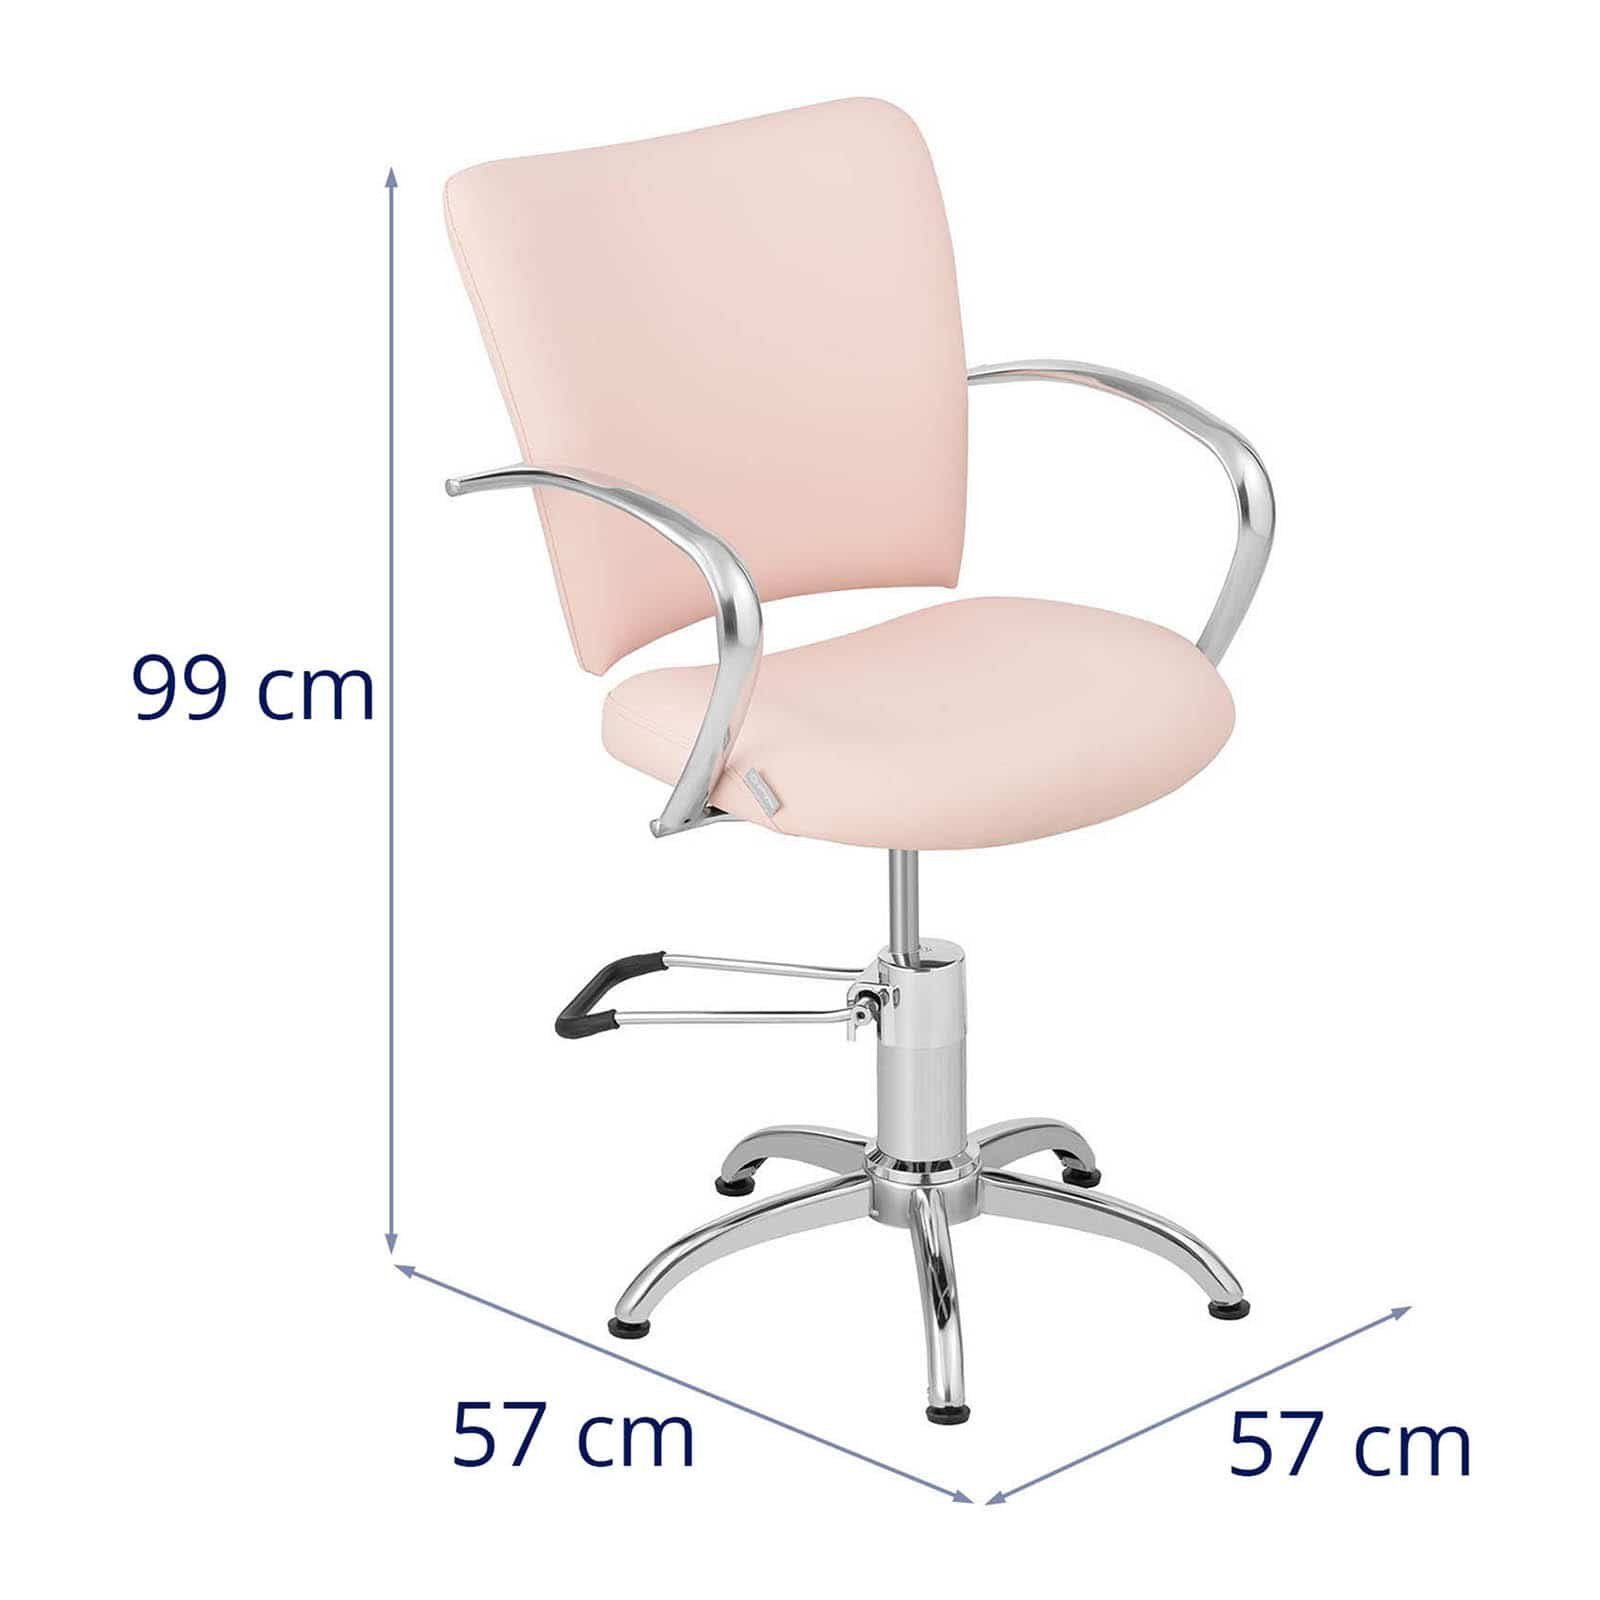 Physa Armlehnstuhl Friseurstuhl Stuhl Friseur drehbar 360° Kosmetikstuhl höhenverstellbar